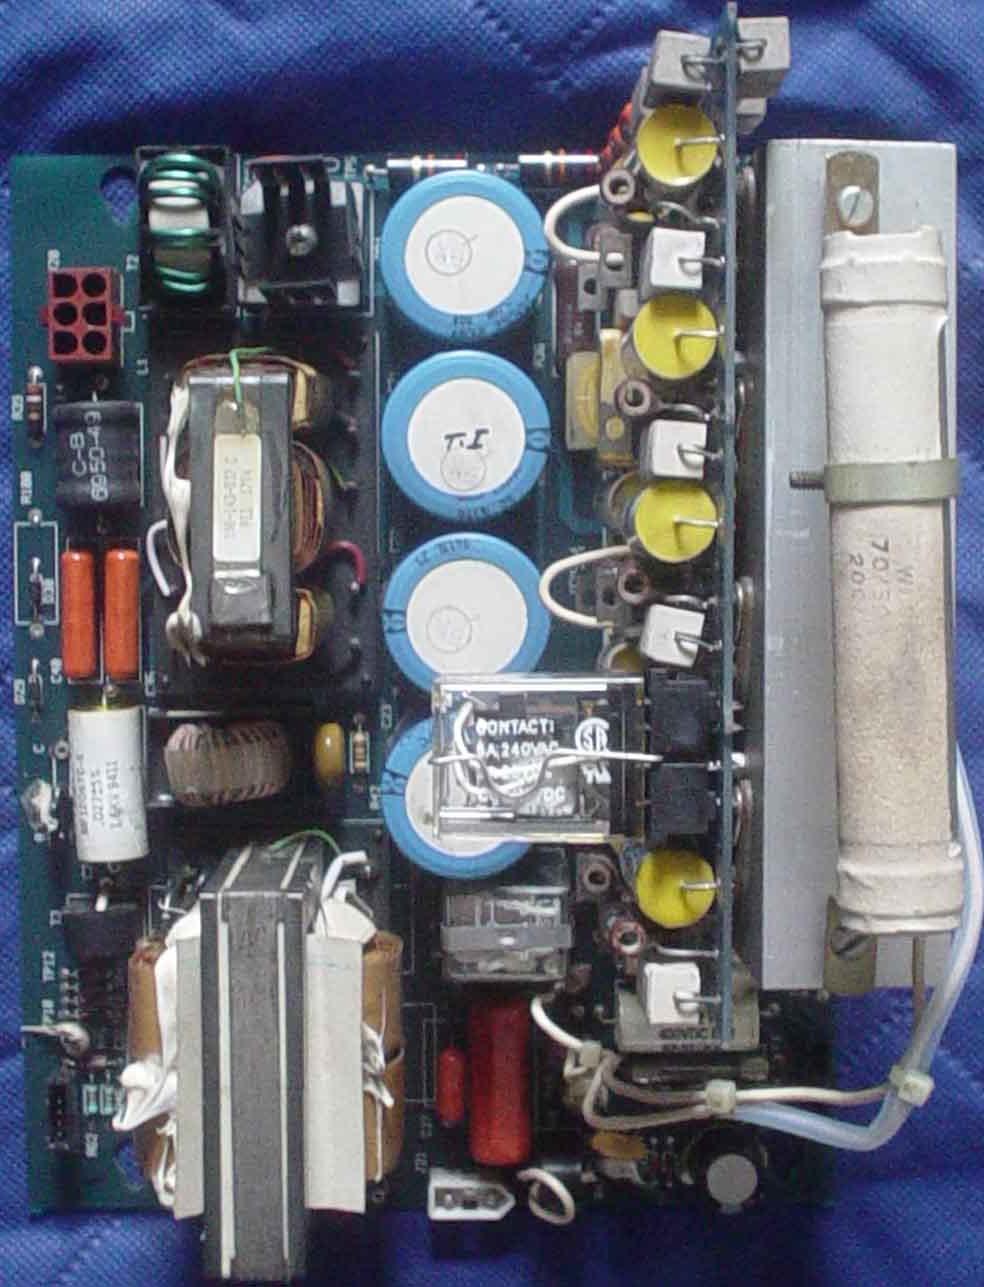 必能信超声波焊接机100-244-017主板900